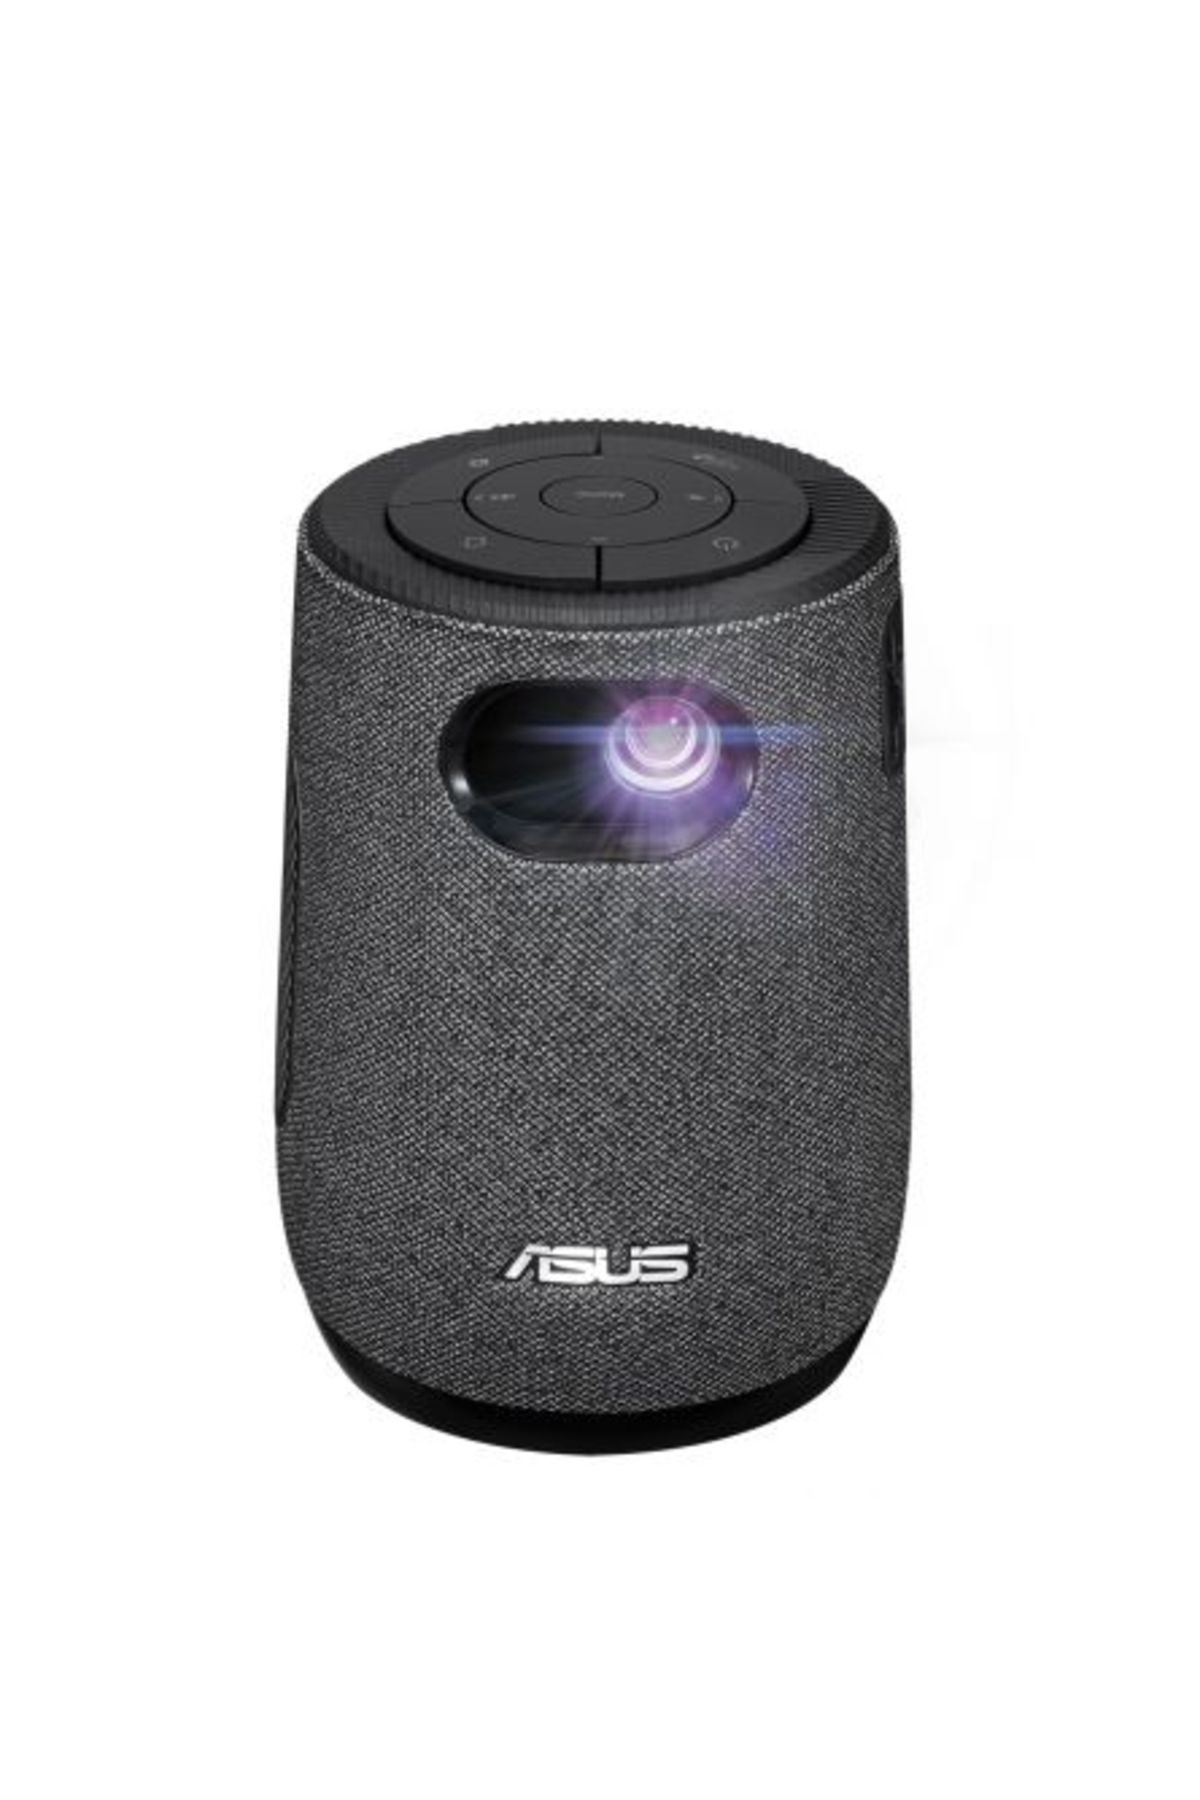 ASUS Zenbeam Latte L1 Taşınabilir Projeksiyon- 300 Lumen 720p Bluetooth Speaker Dahılı Batarya Hdmı Usb